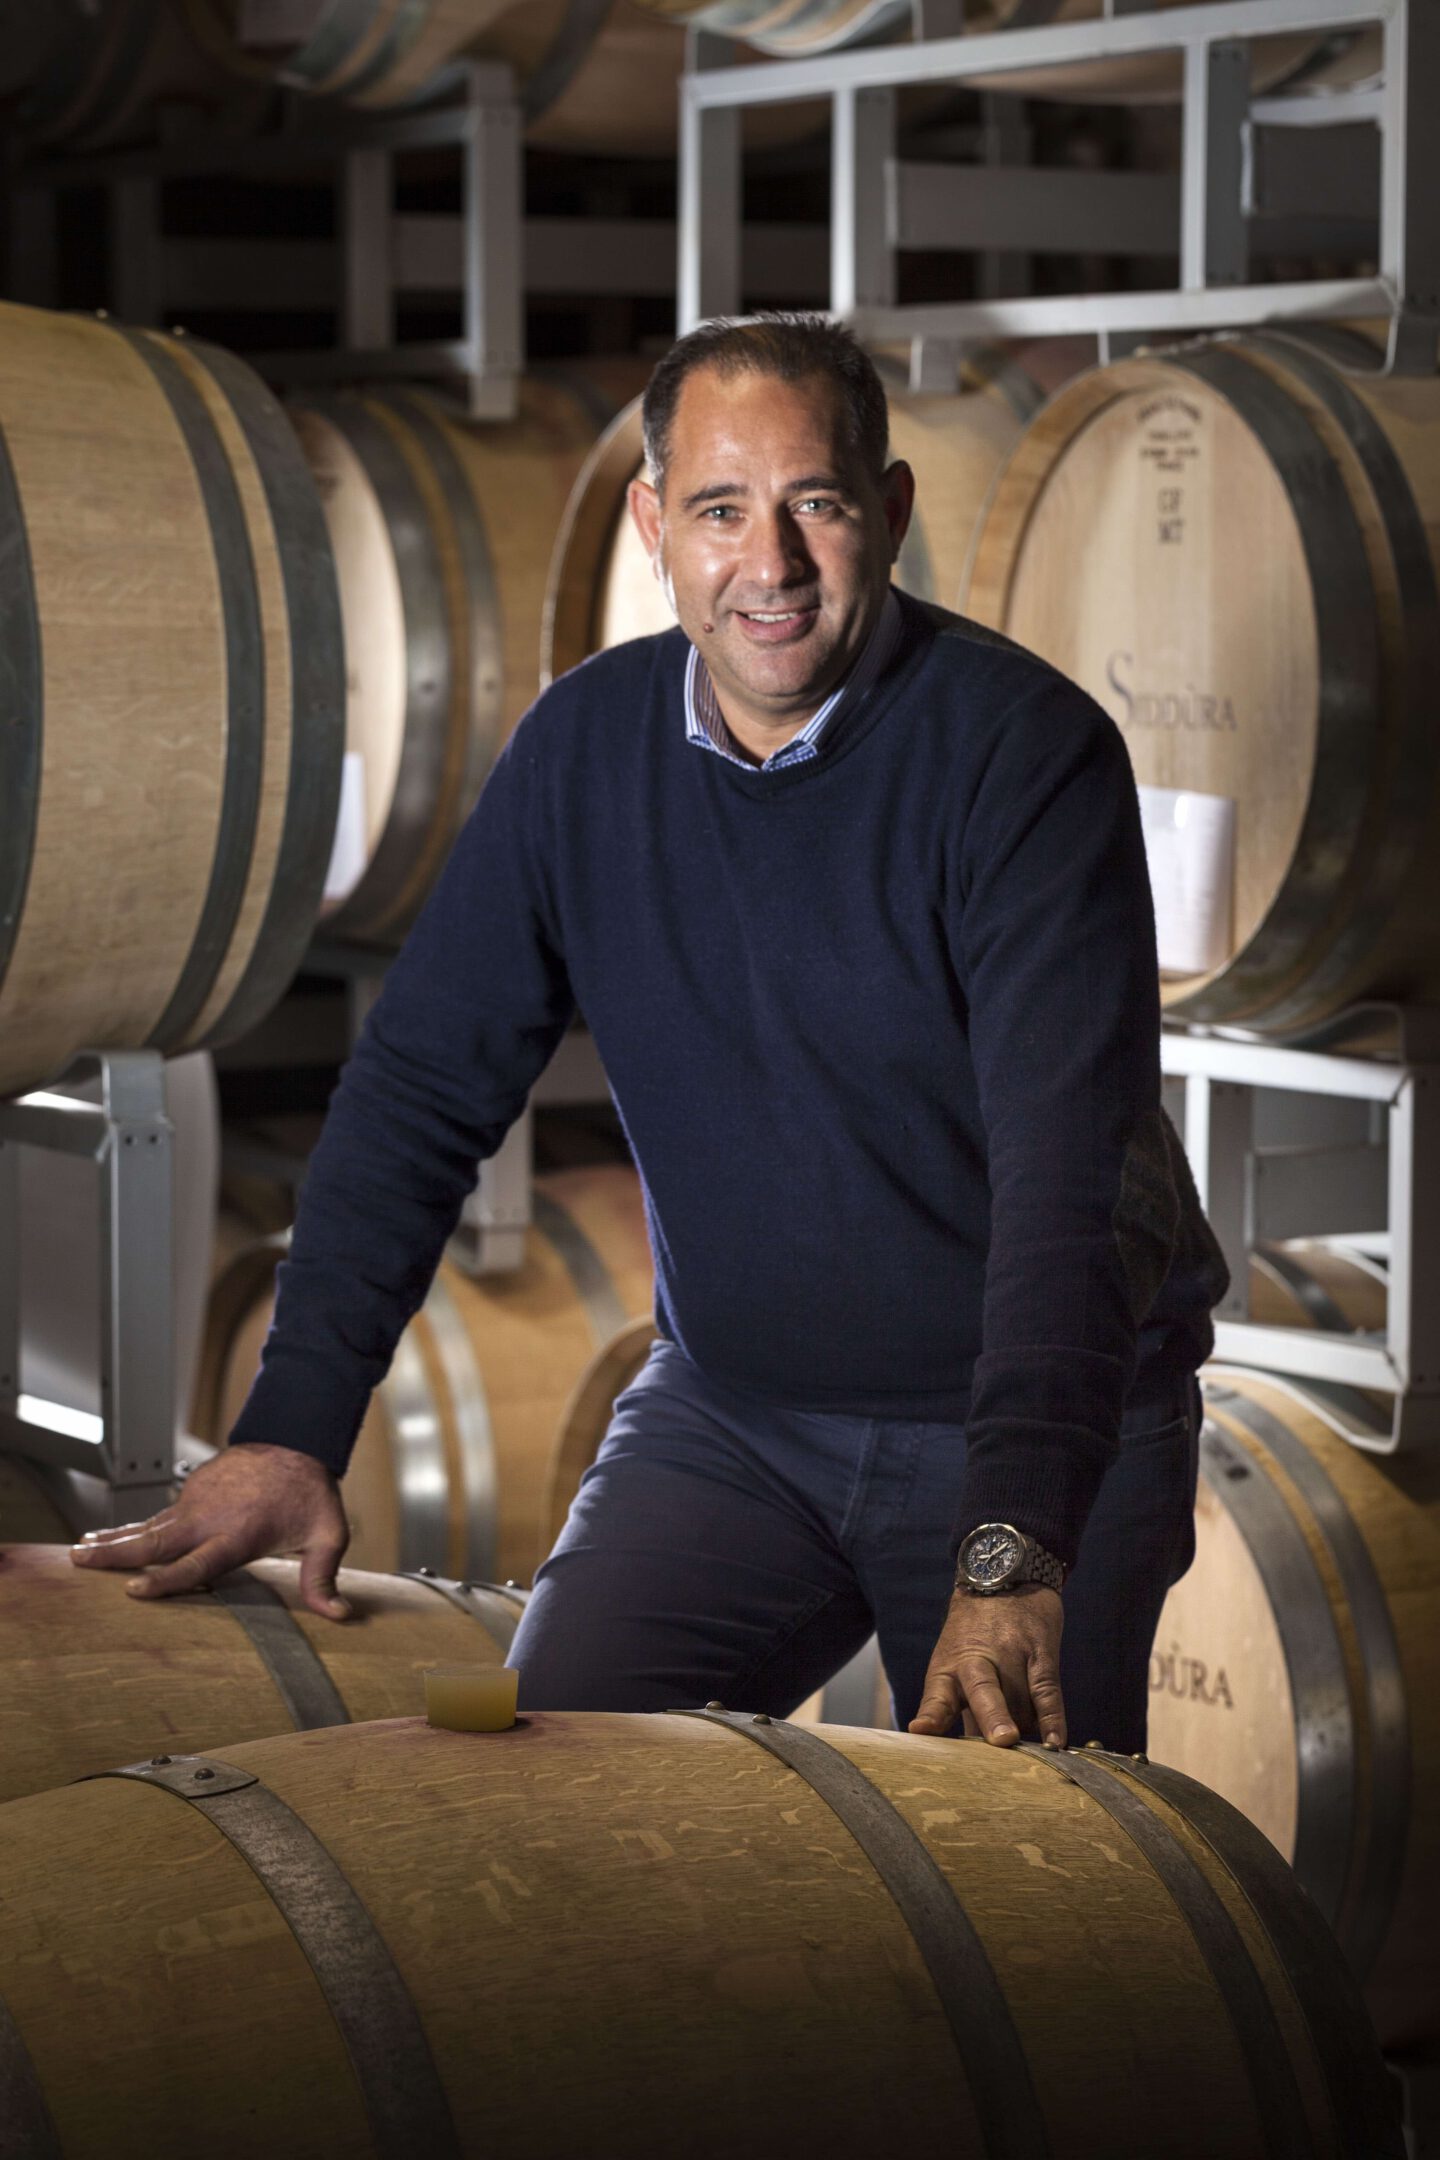 Siddura Massimo Ruggero Gutsdirektor wine wein gentlemens journey weinkafsliste Wein-Geheimtipps